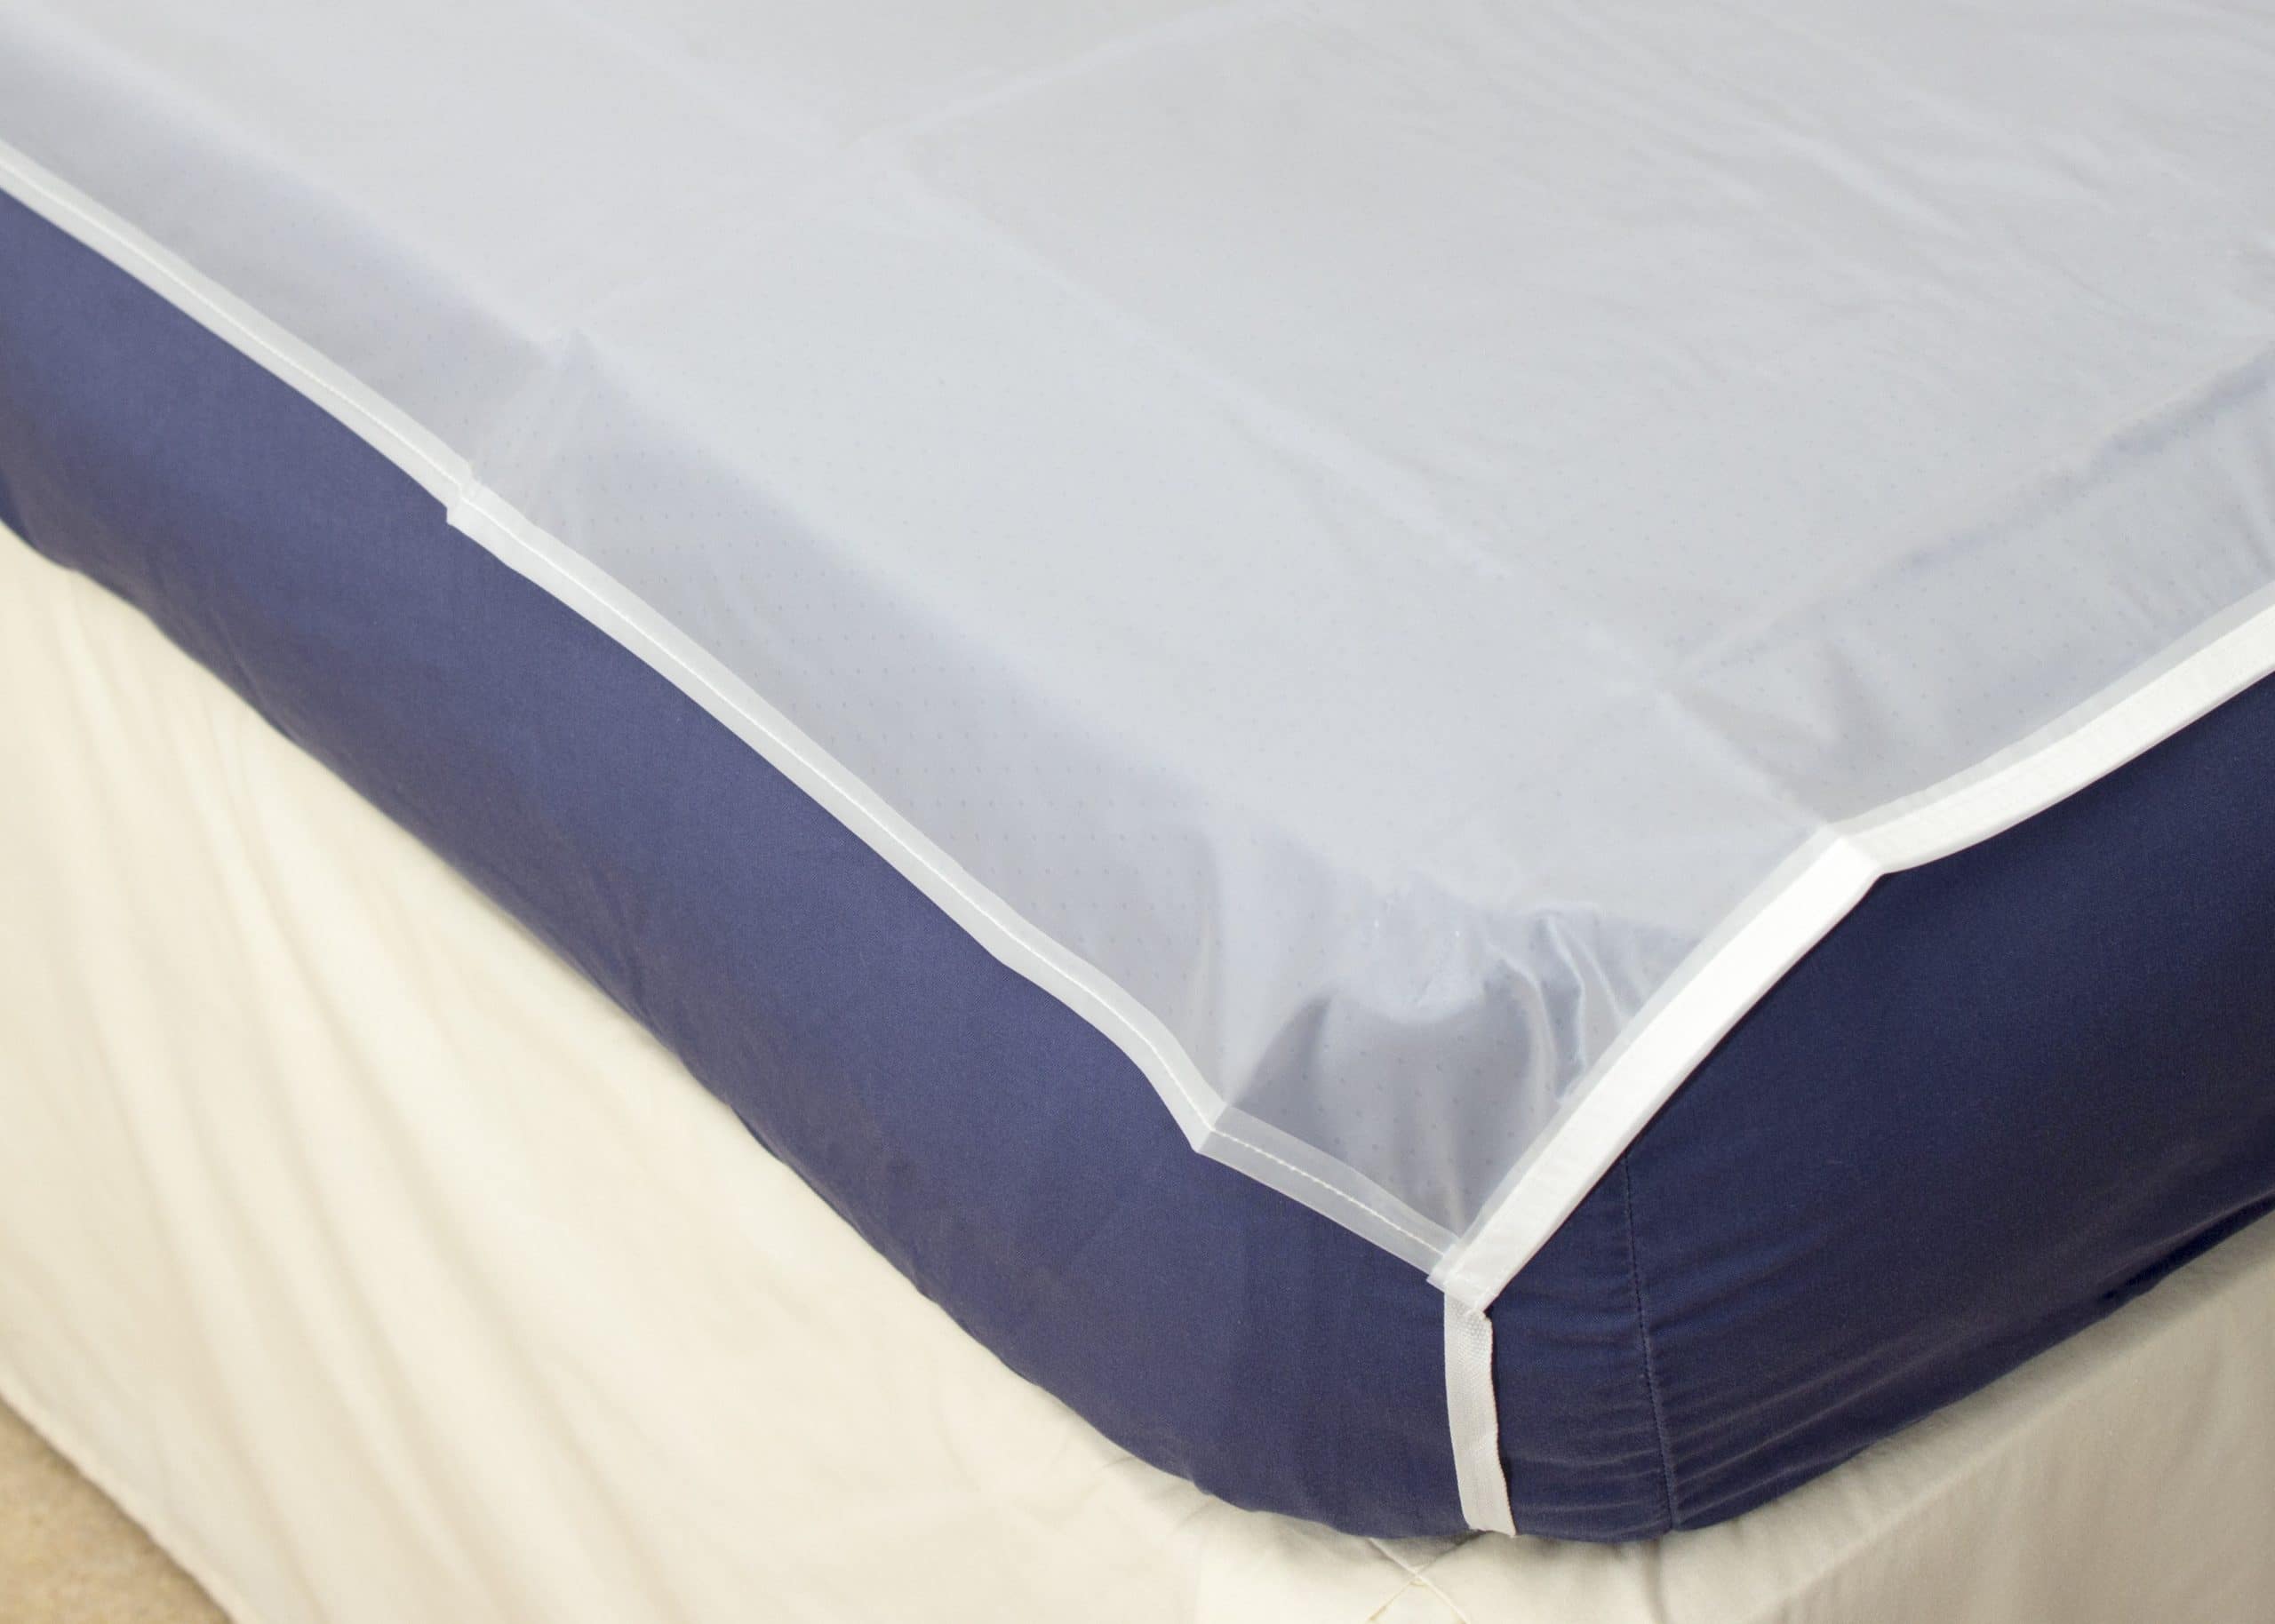 mattress pad tie downs